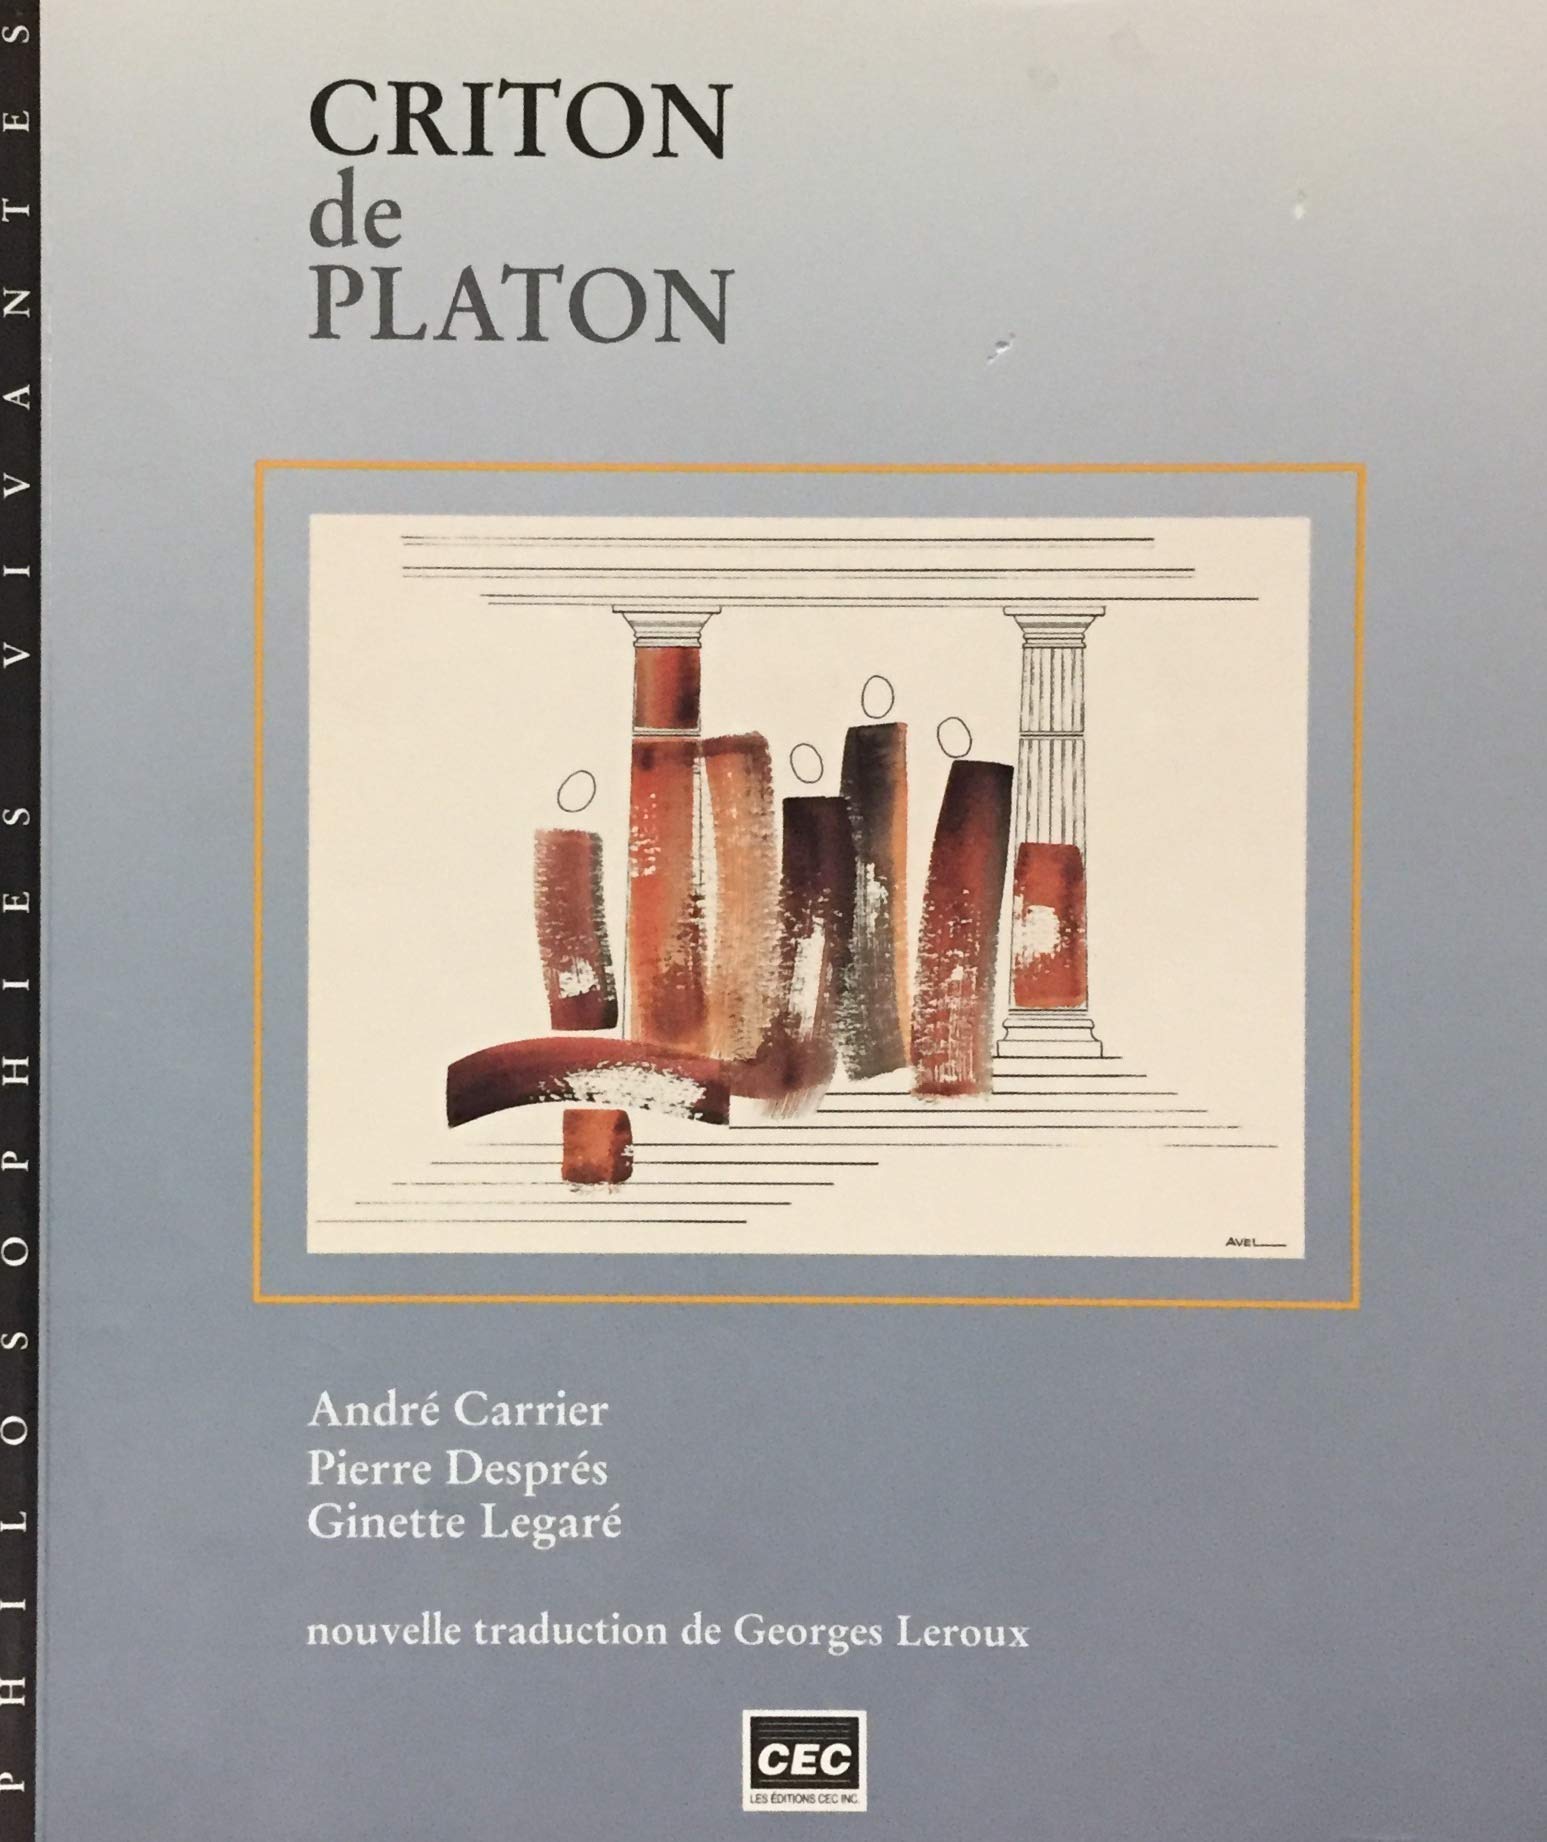 Livre ISBN 2761712994 Criton de Platon (André Carrier)